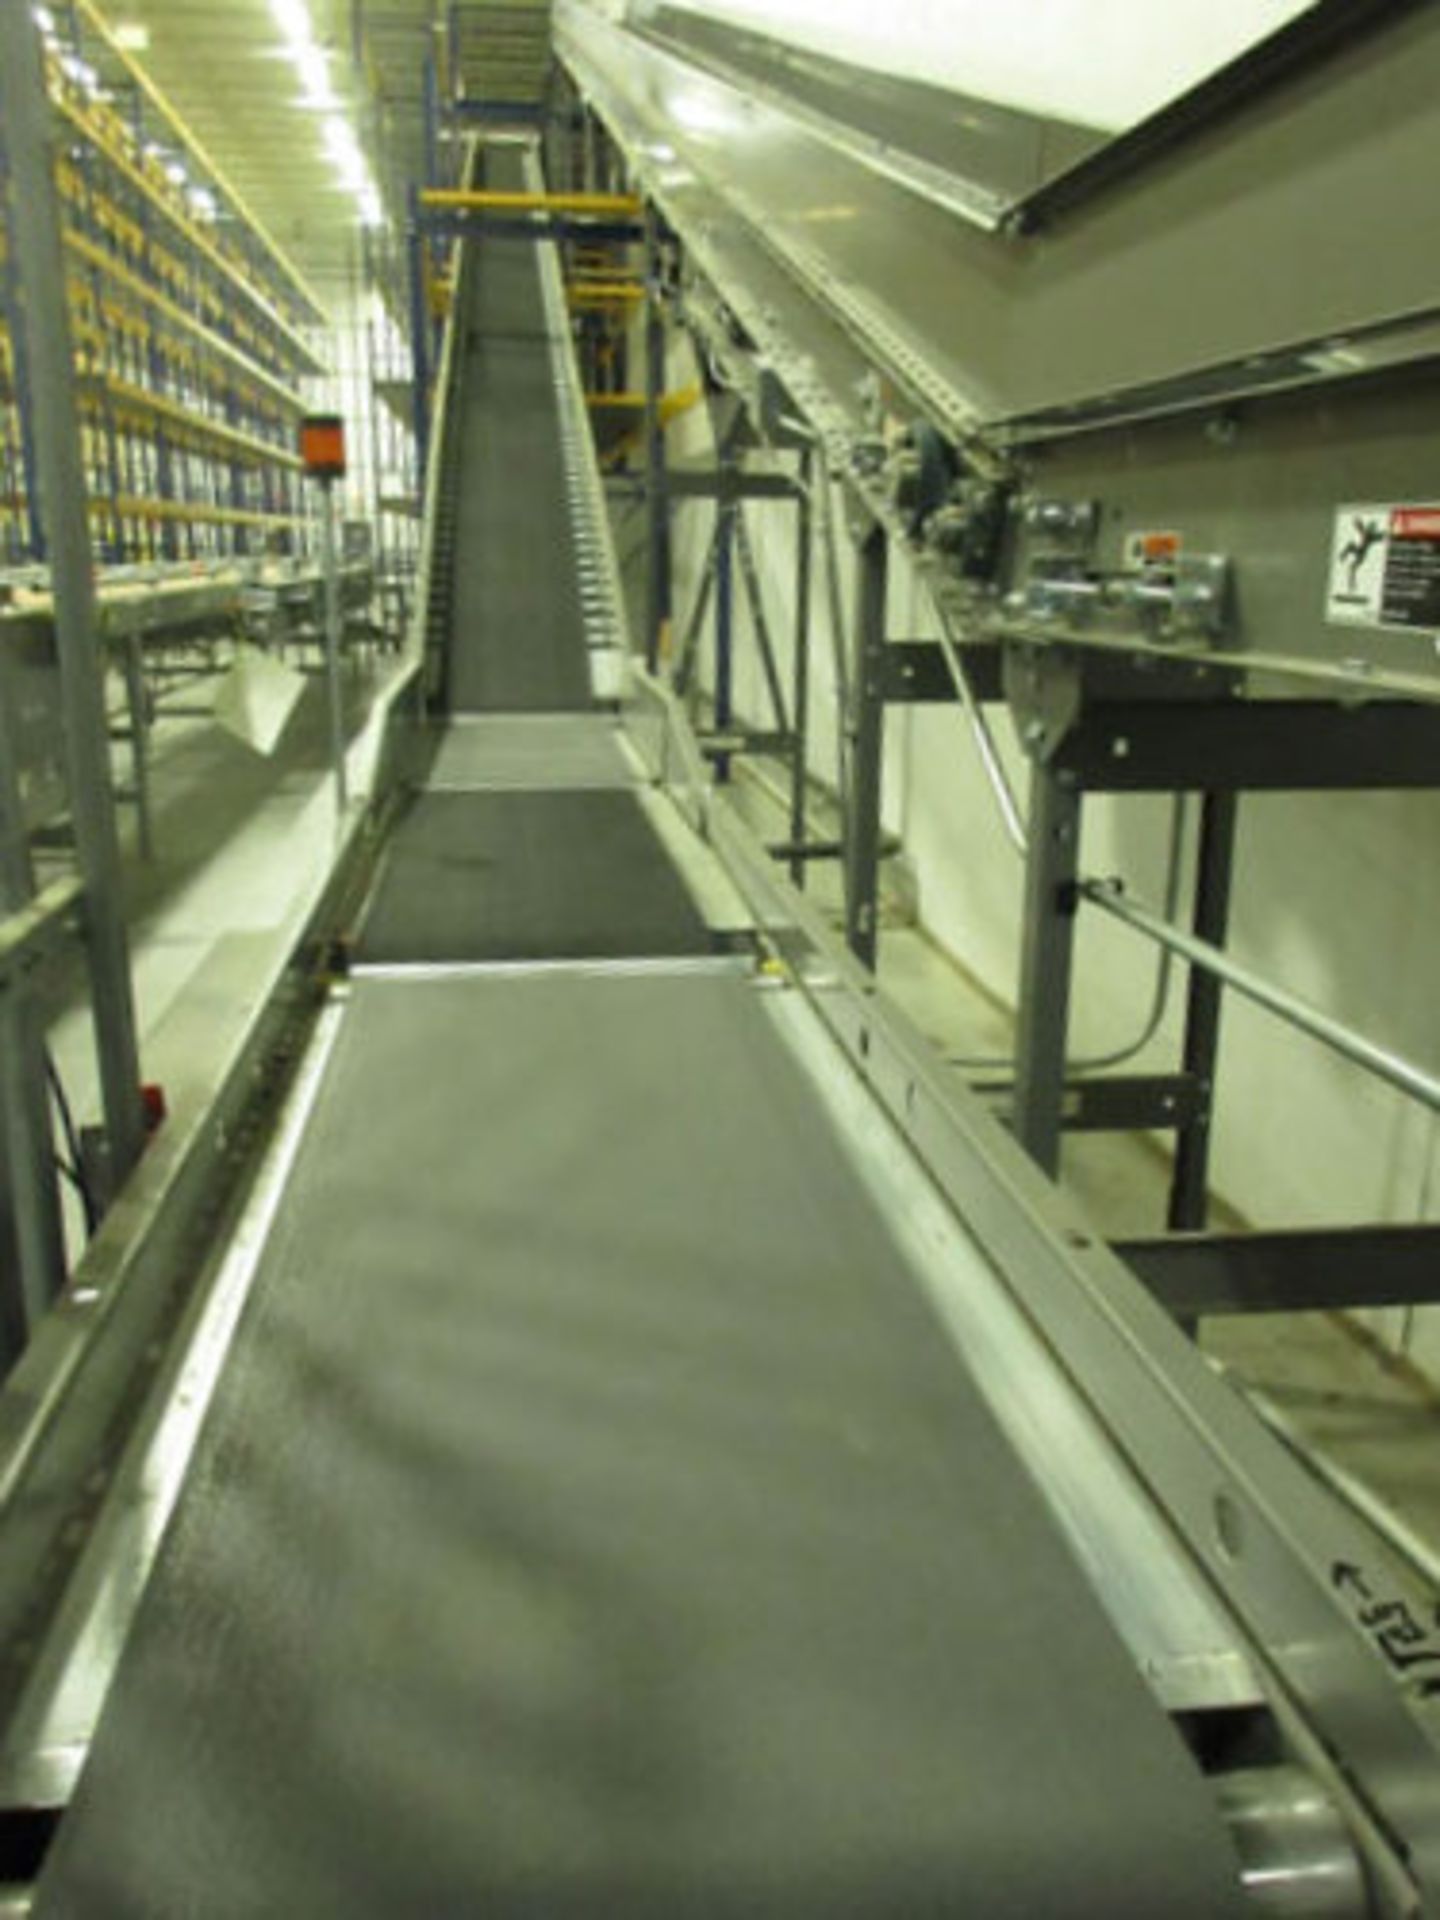 Conveyor - Image 2 of 5